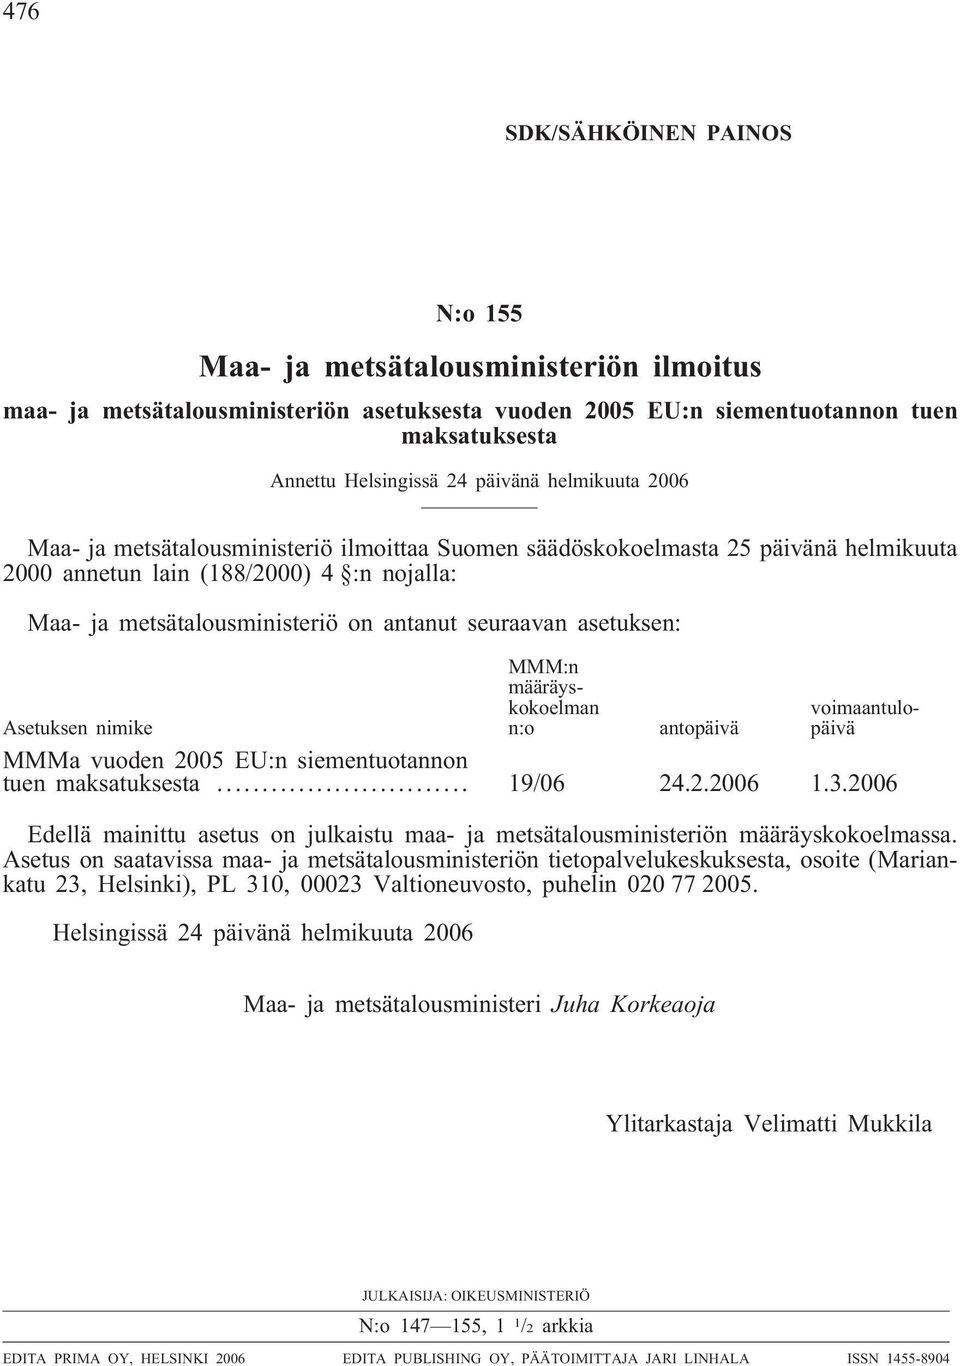 asetuksen: MMM:n määräyskokoelman n:o voimaantulopäivä Asetuksen nimike antopäivä MMMa vuoden 2005 EU:n siementuotannon tuen maksatuksesta... 19/06 24.2.2006 1.3.